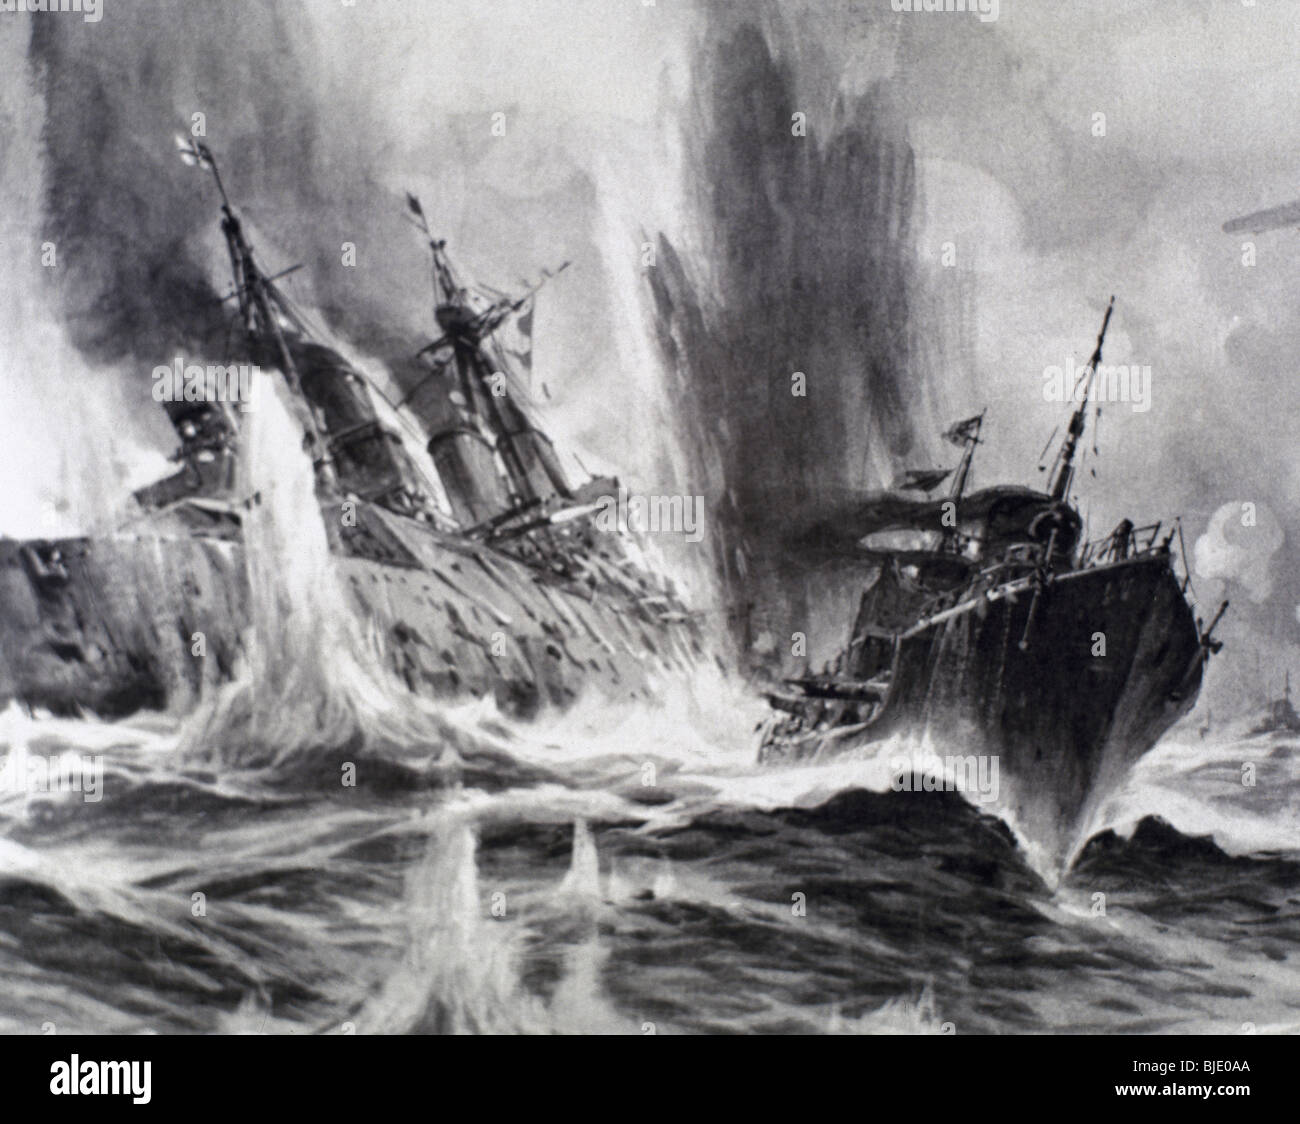 ERSTER WELTKRIEG (1914-1918). Das englische Schlachtschiff "Löwe" wurde durch einen Torpedo von einem deutschen Schiff getroffen. Zeichnung. Stockfoto